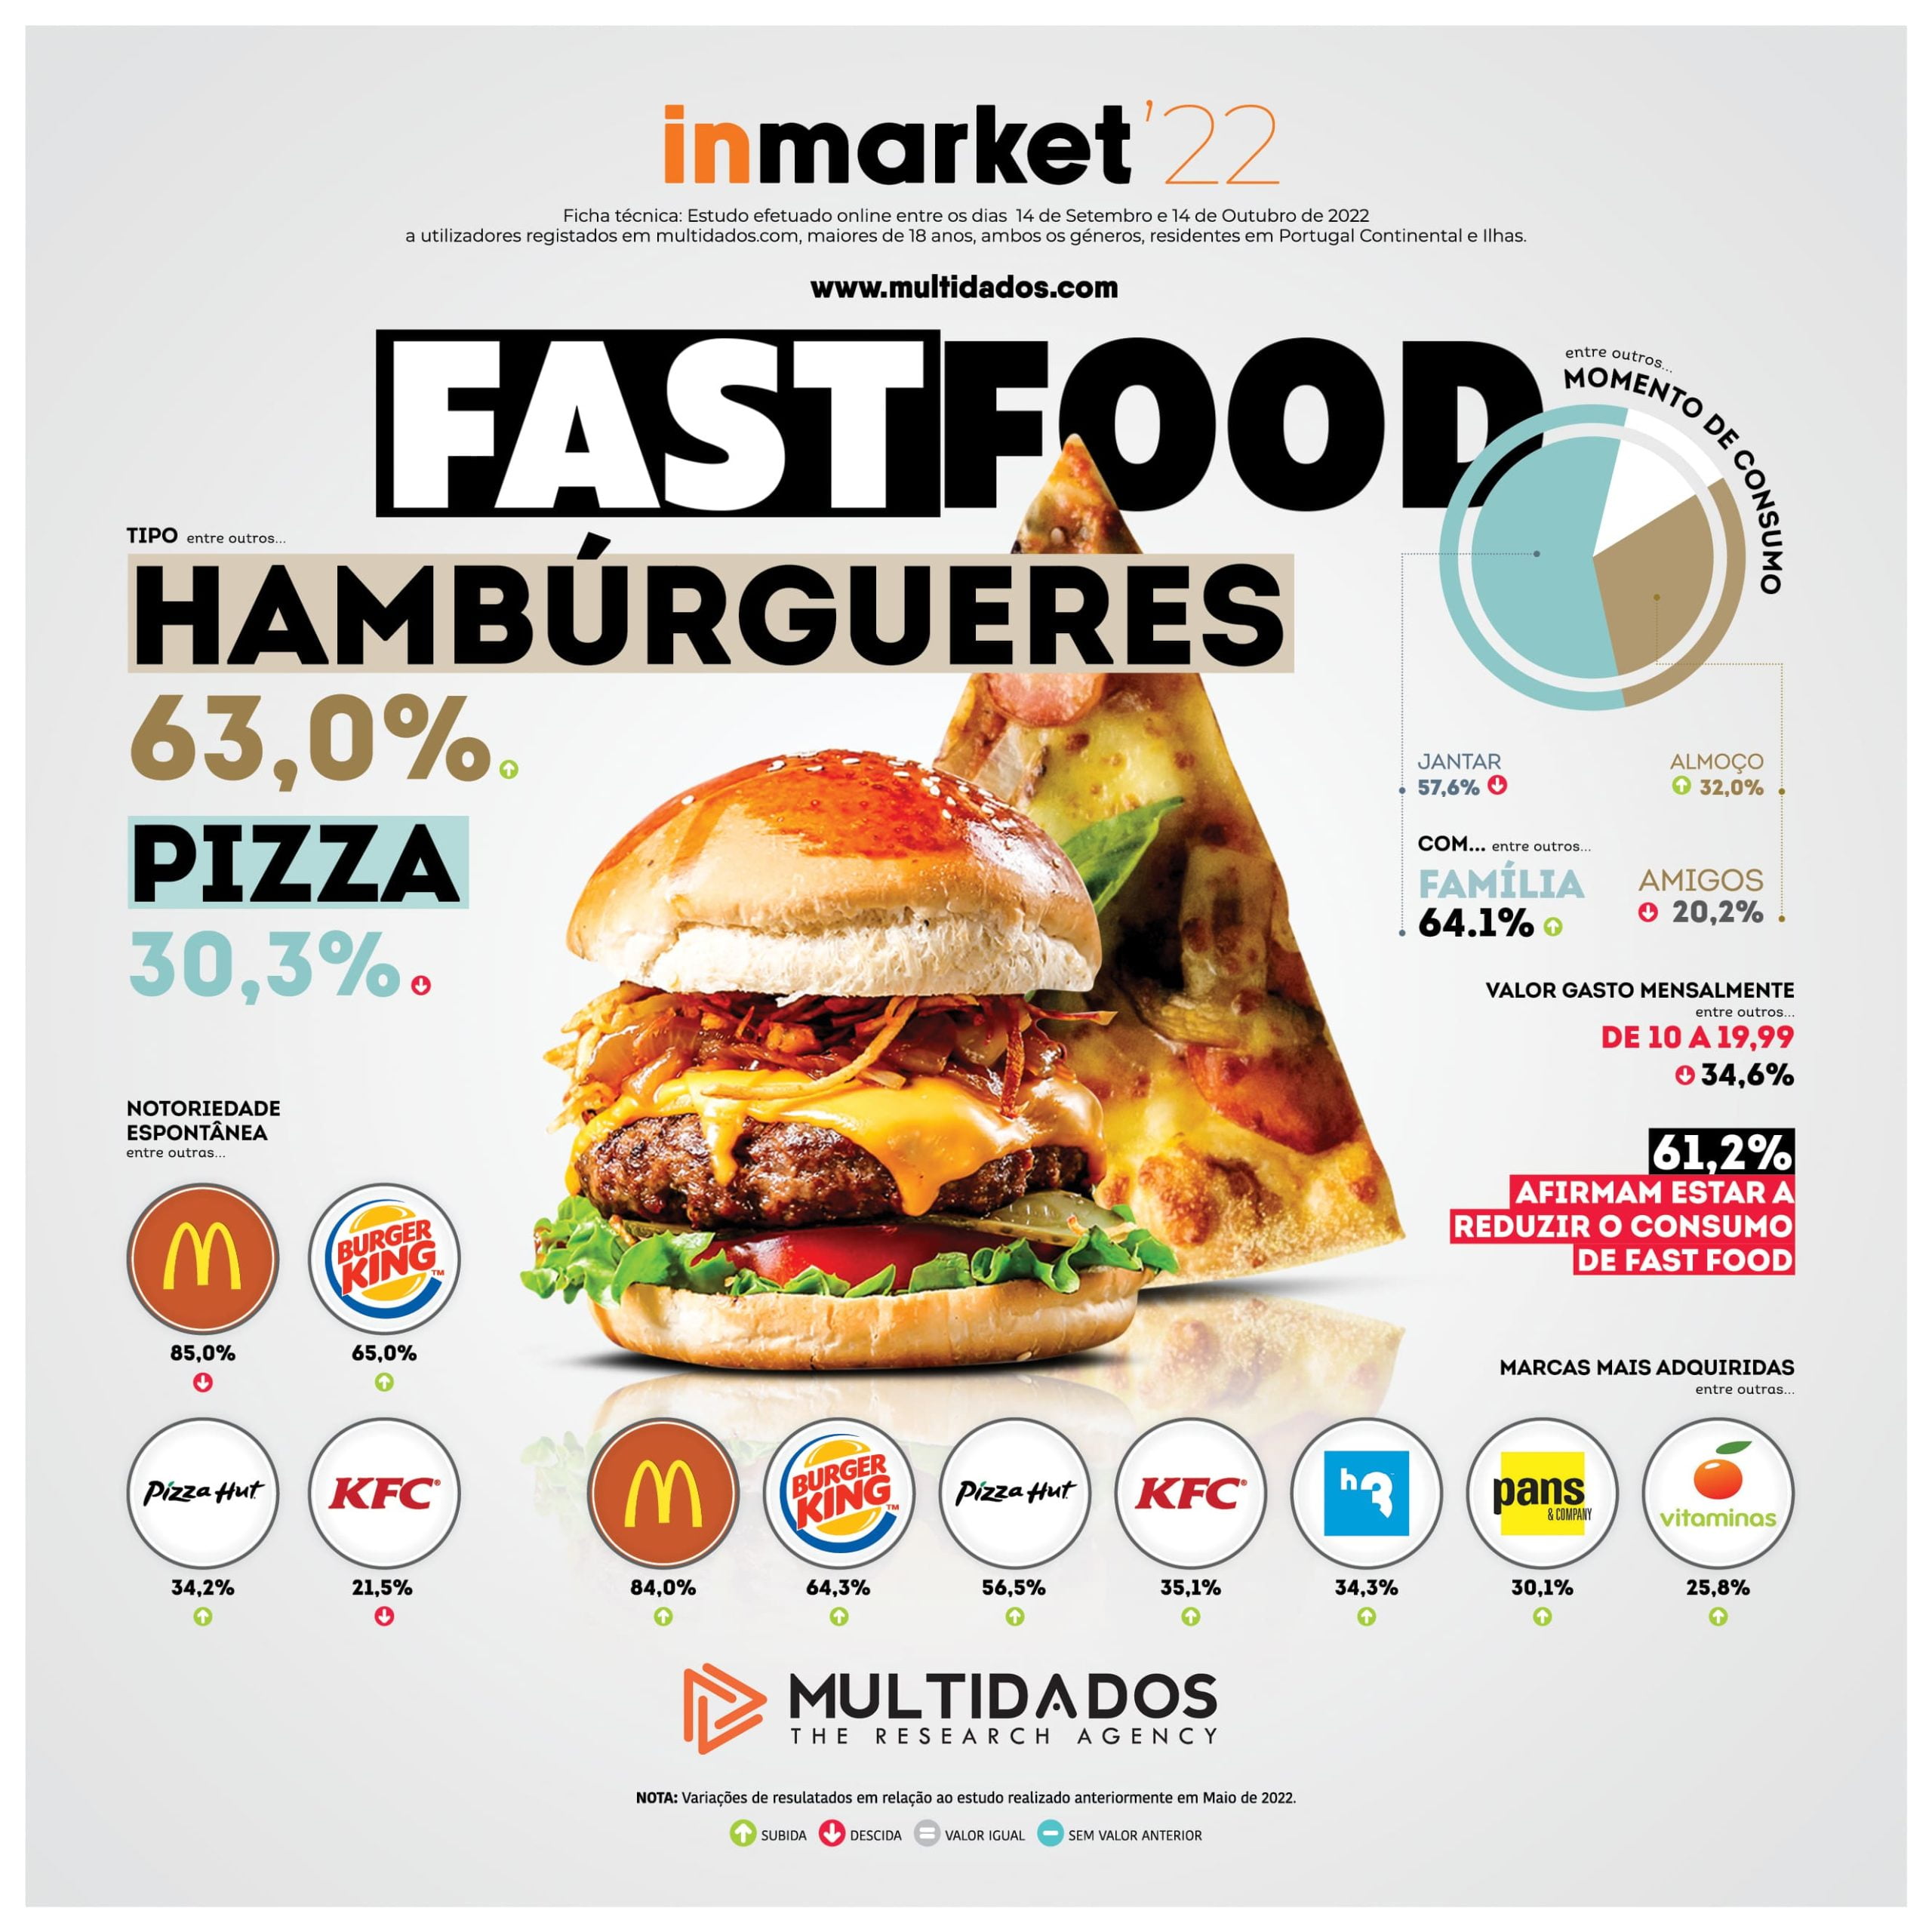 Burger King e Tim Hortons anunciam fusão para criar gigante do fast food -  Food Magazine